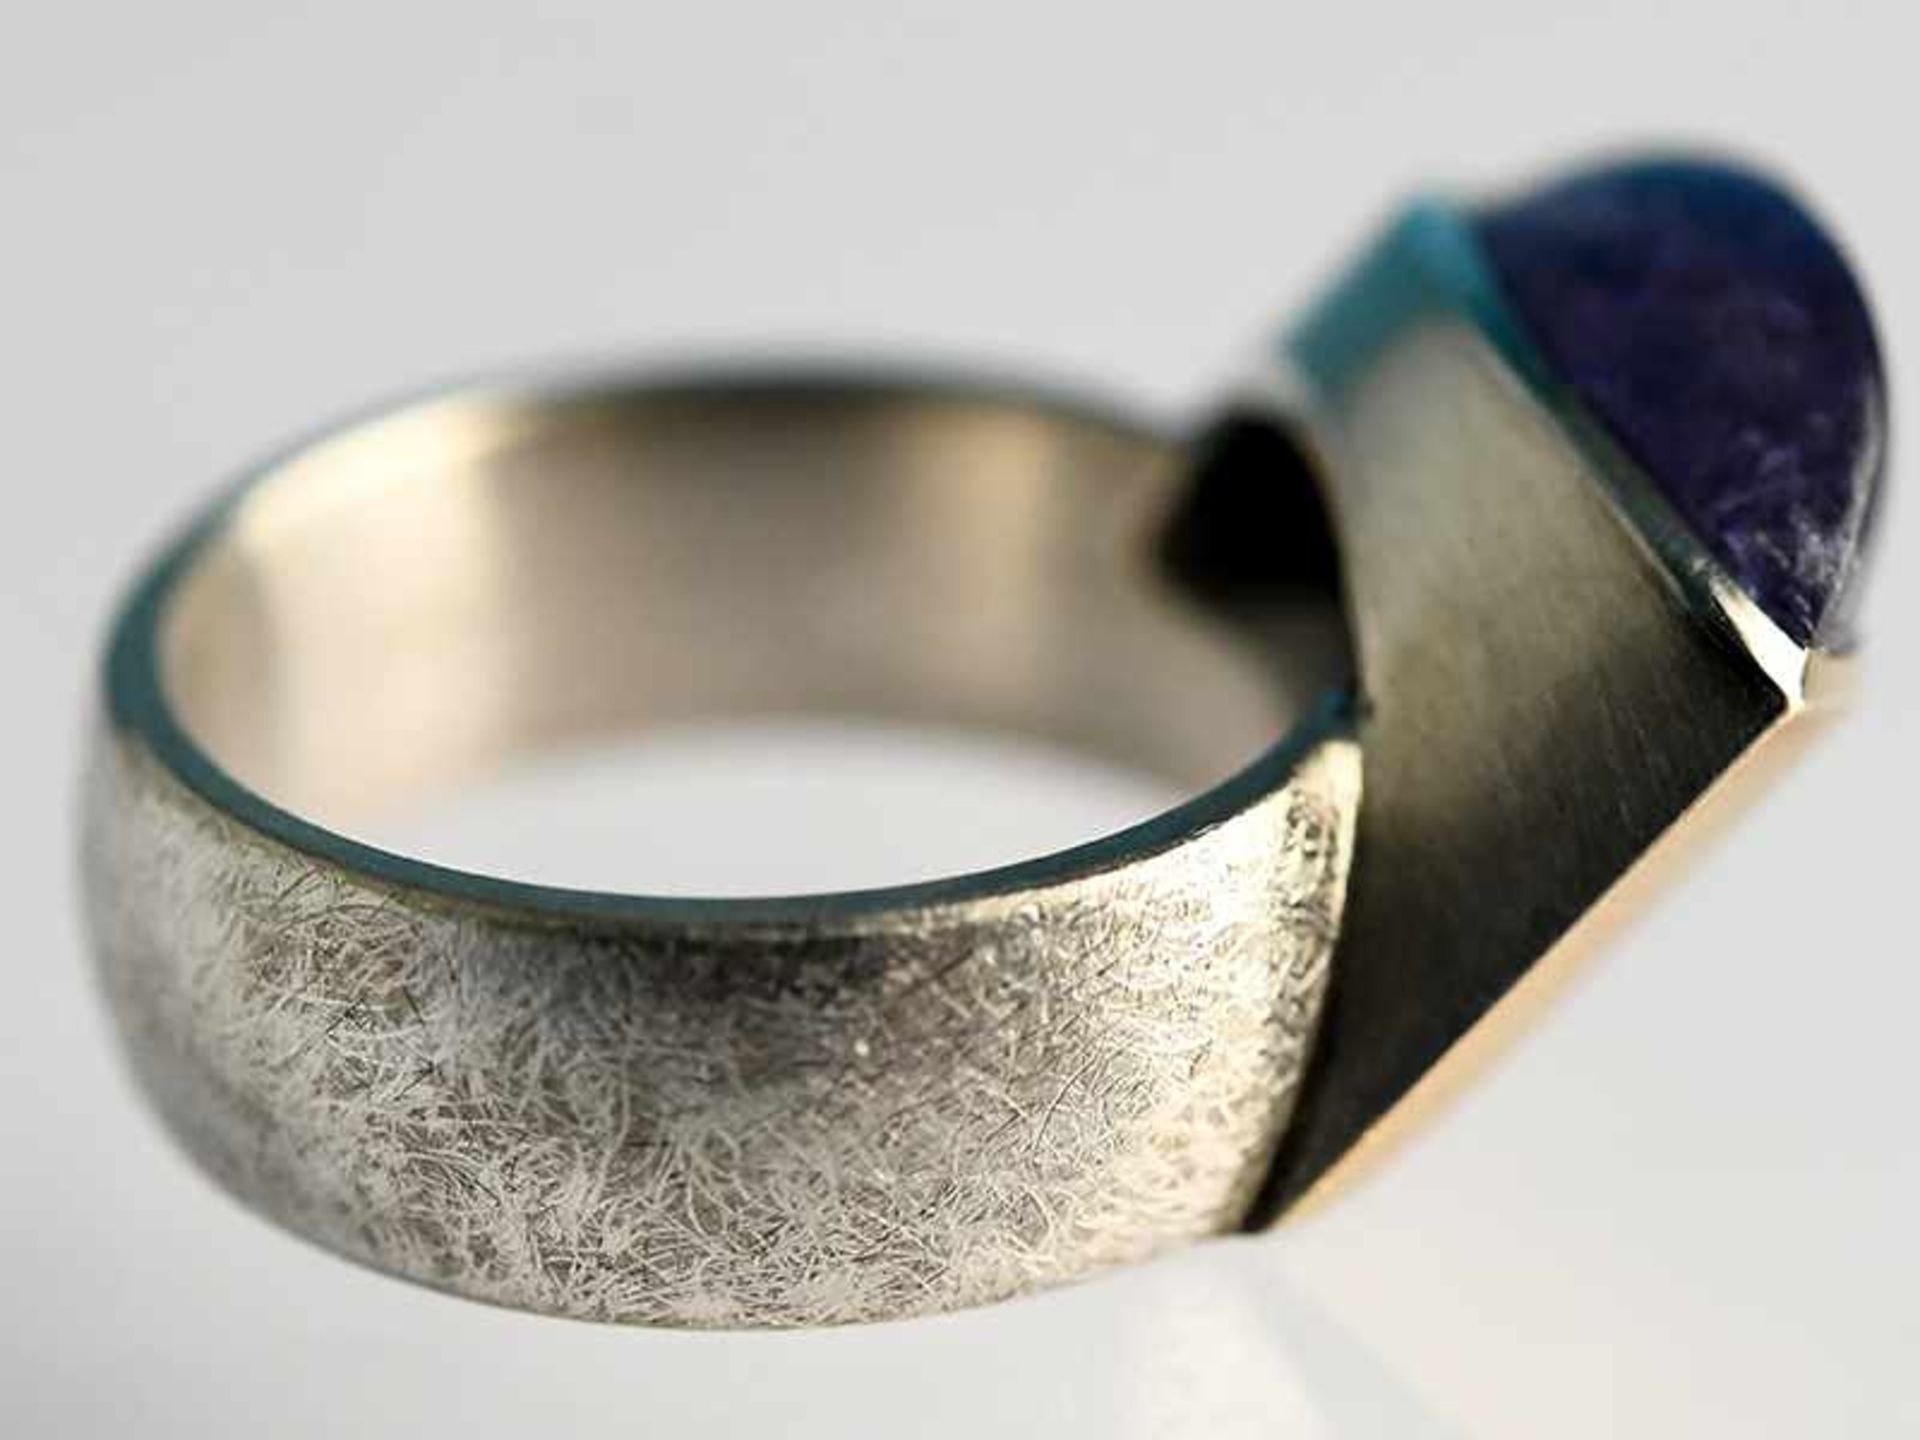 Moderner Ring mit Tansanit-Cabochon, Goldschmiedearbeit, 21. Jh. 925/- Silber und 585/- Gelbgold. - Bild 3 aus 7